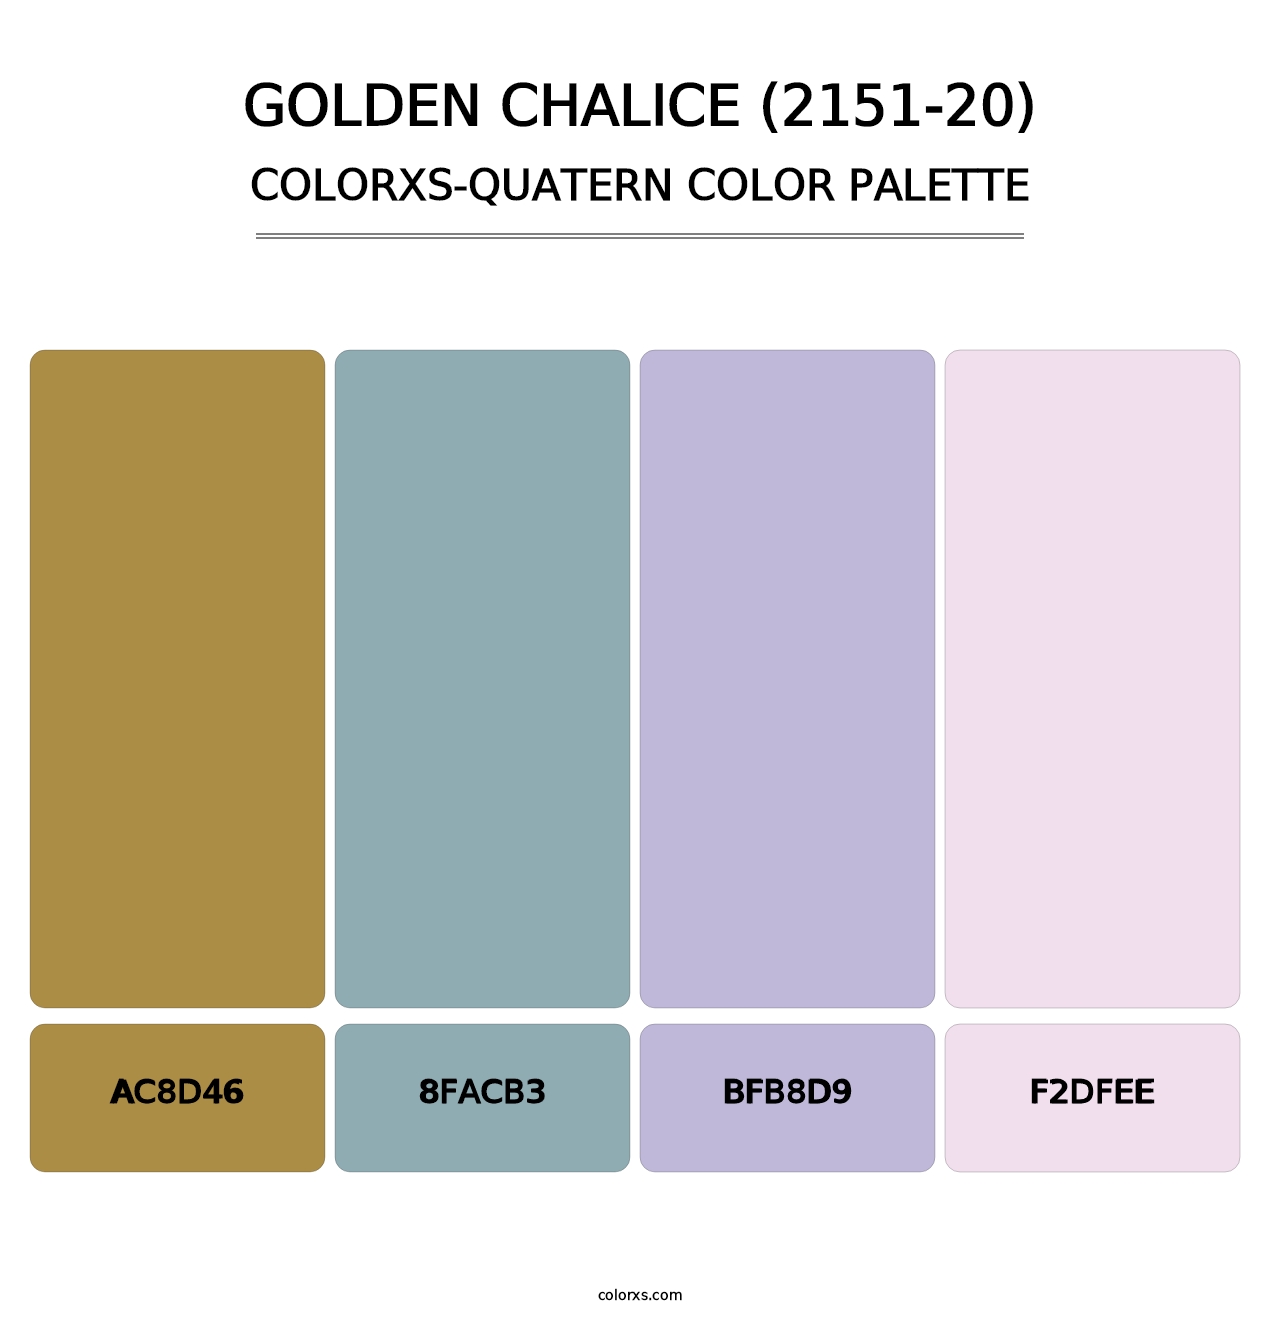 Golden Chalice (2151-20) - Colorxs Quatern Palette